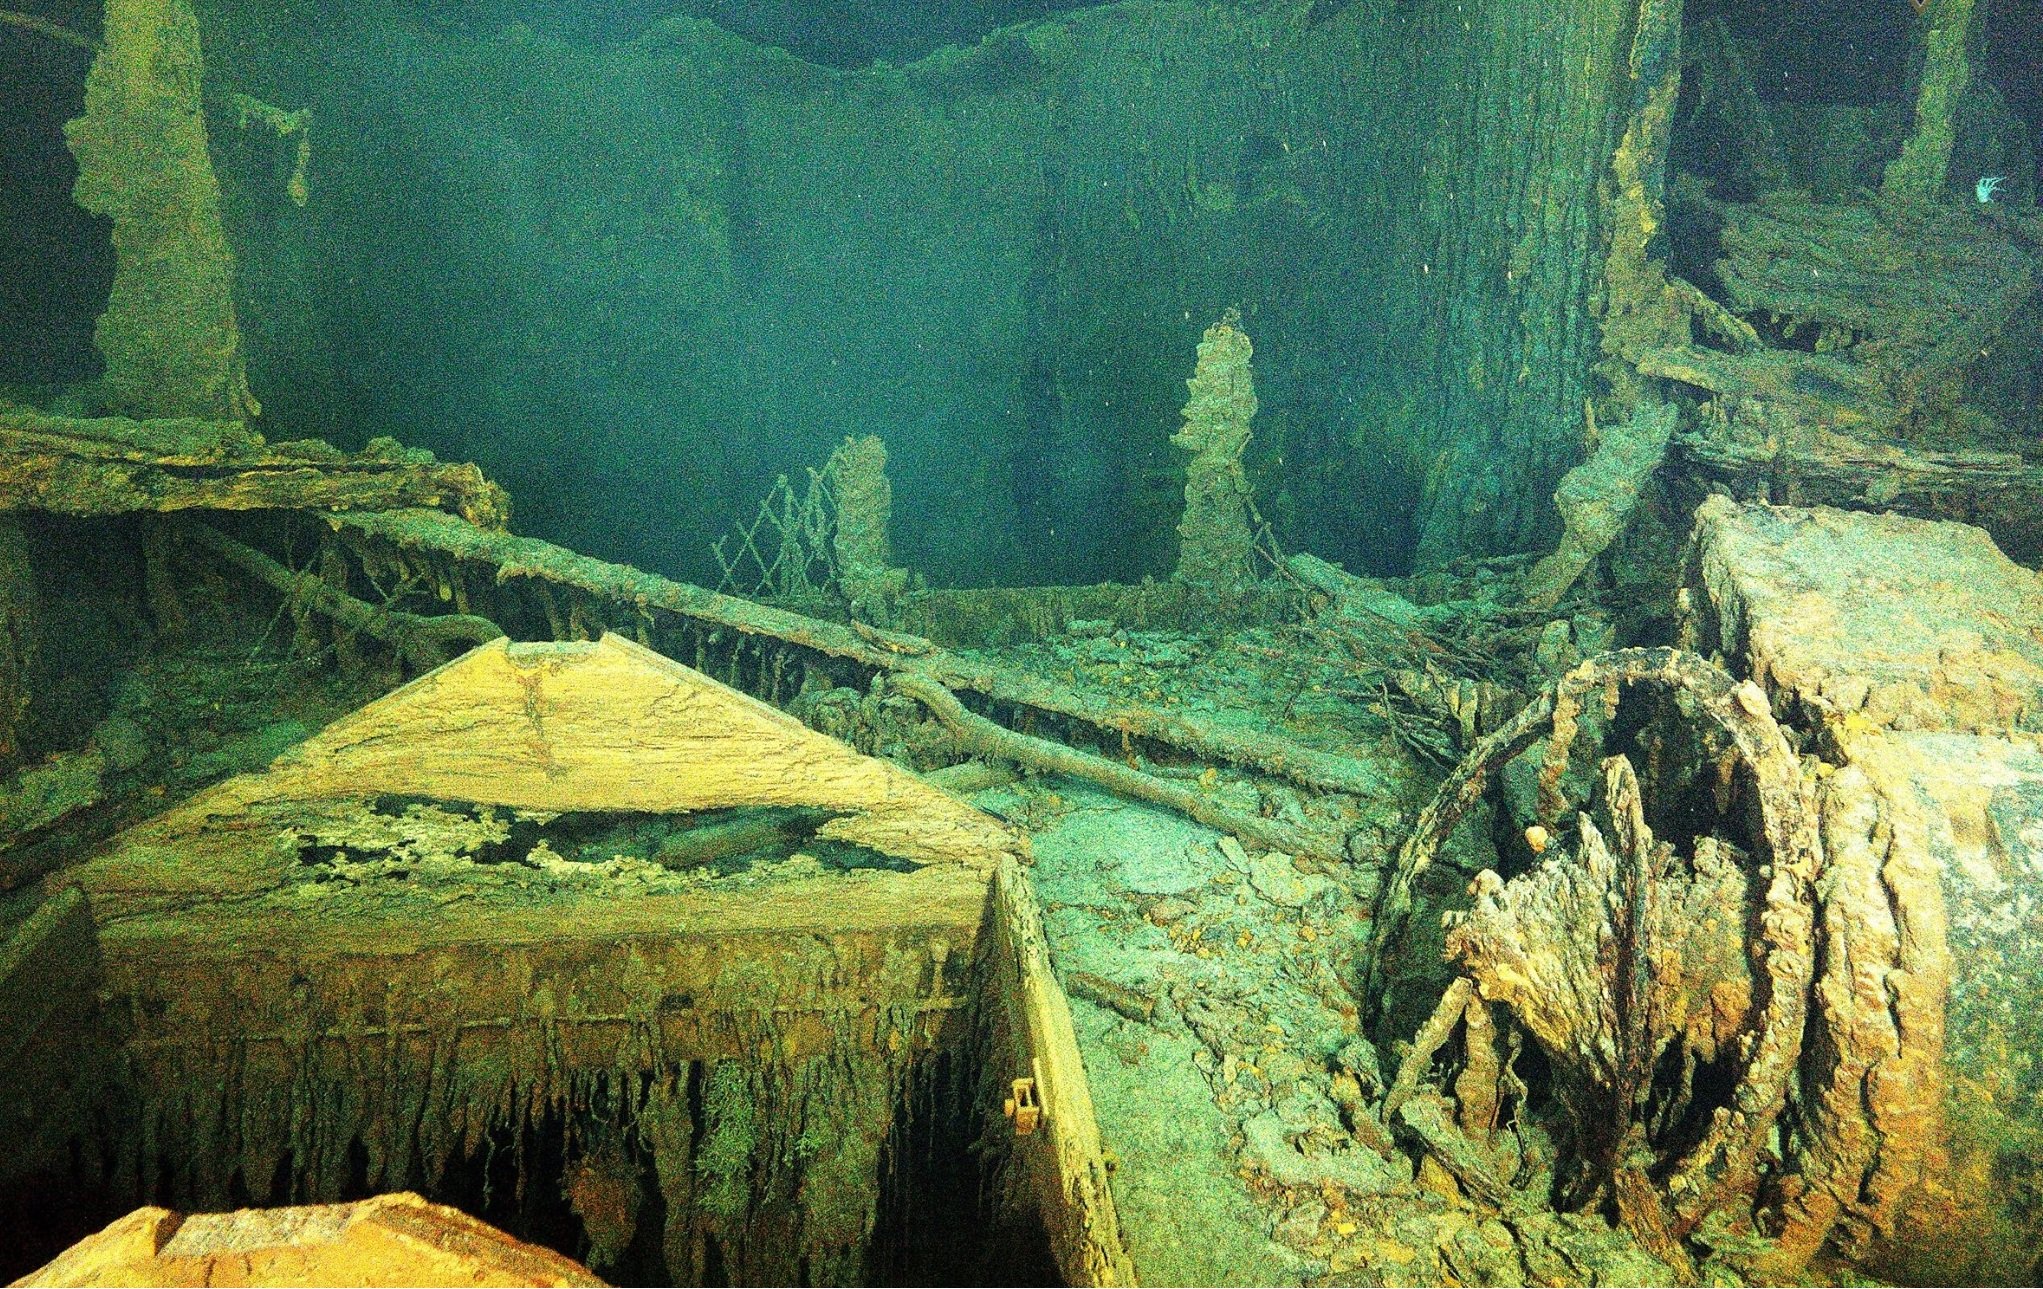 Bỏ gần 6 tỷ để tận mắt chiêm ngưỡng xác tàu Titanic huyền thoại